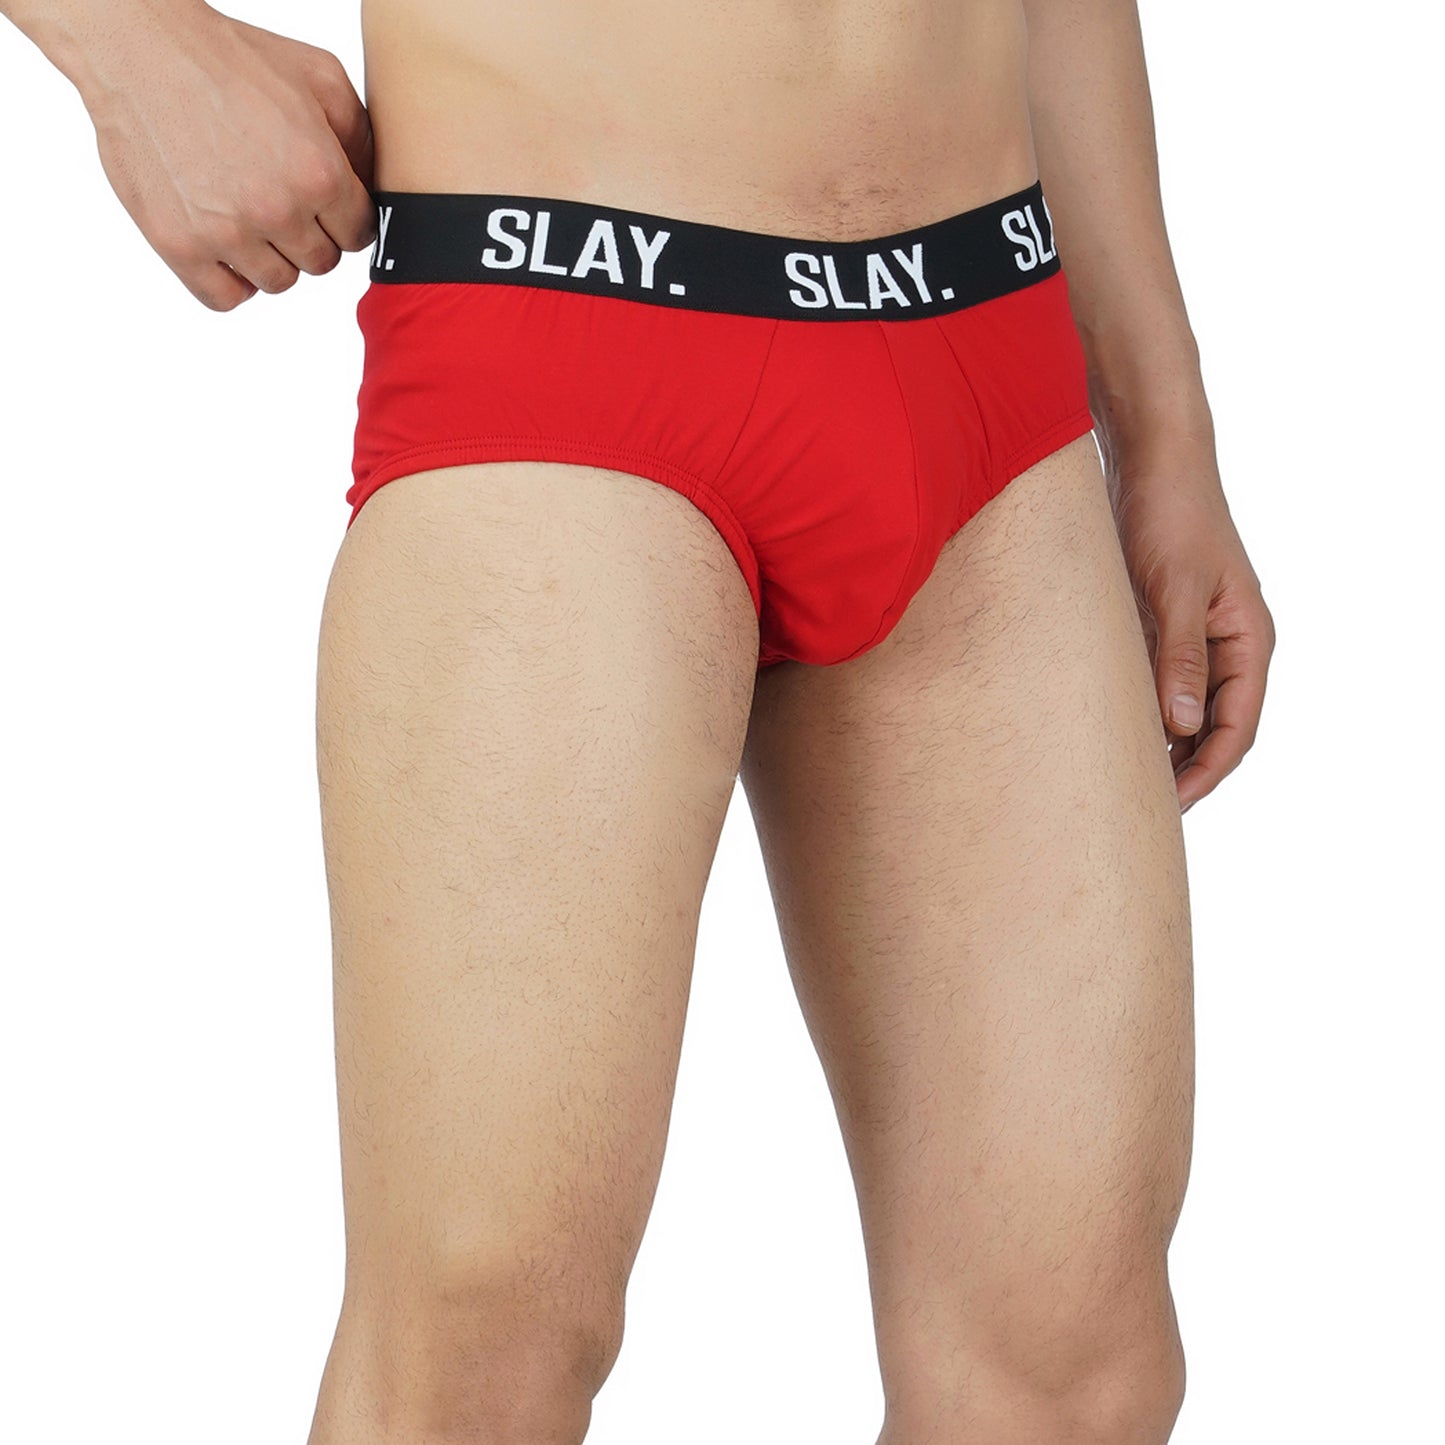 SLAY. Men's Red Underwear Cotton Briefs